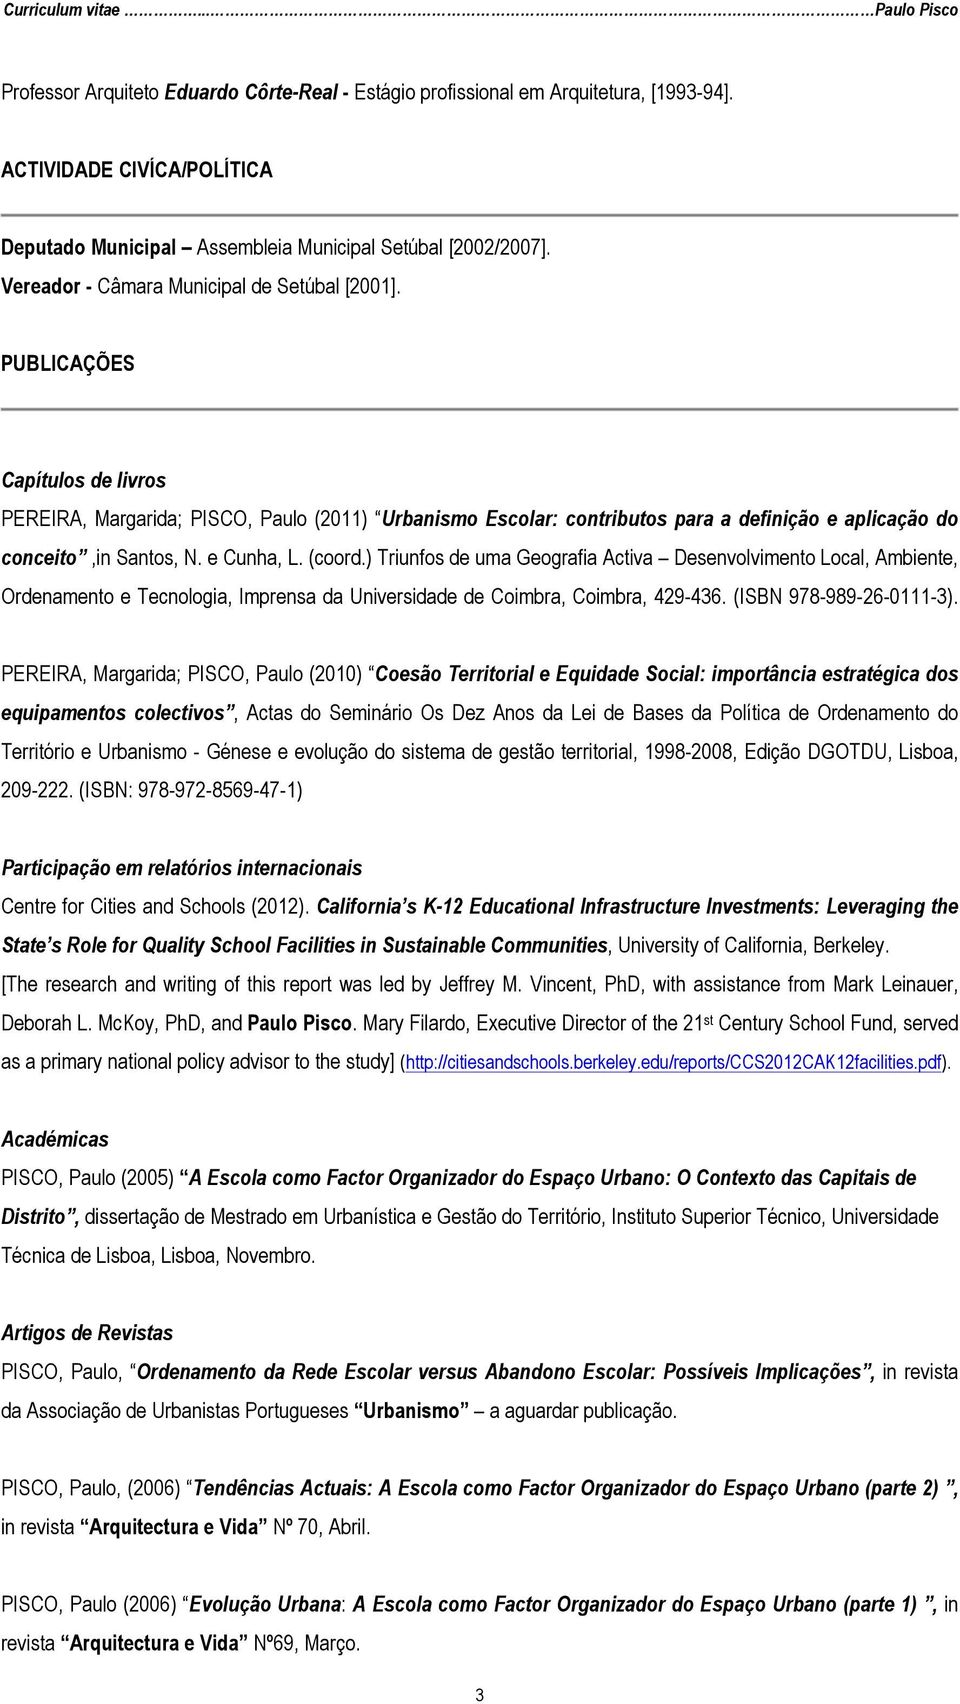 PUBLICAÇÕES Capítulos de livros PEREIRA, Margarida; PISCO, Paulo (2011) Urbanismo Escolar: contributos para a definição e aplicação do conceito,in Santos, N. e Cunha, L. (coord.